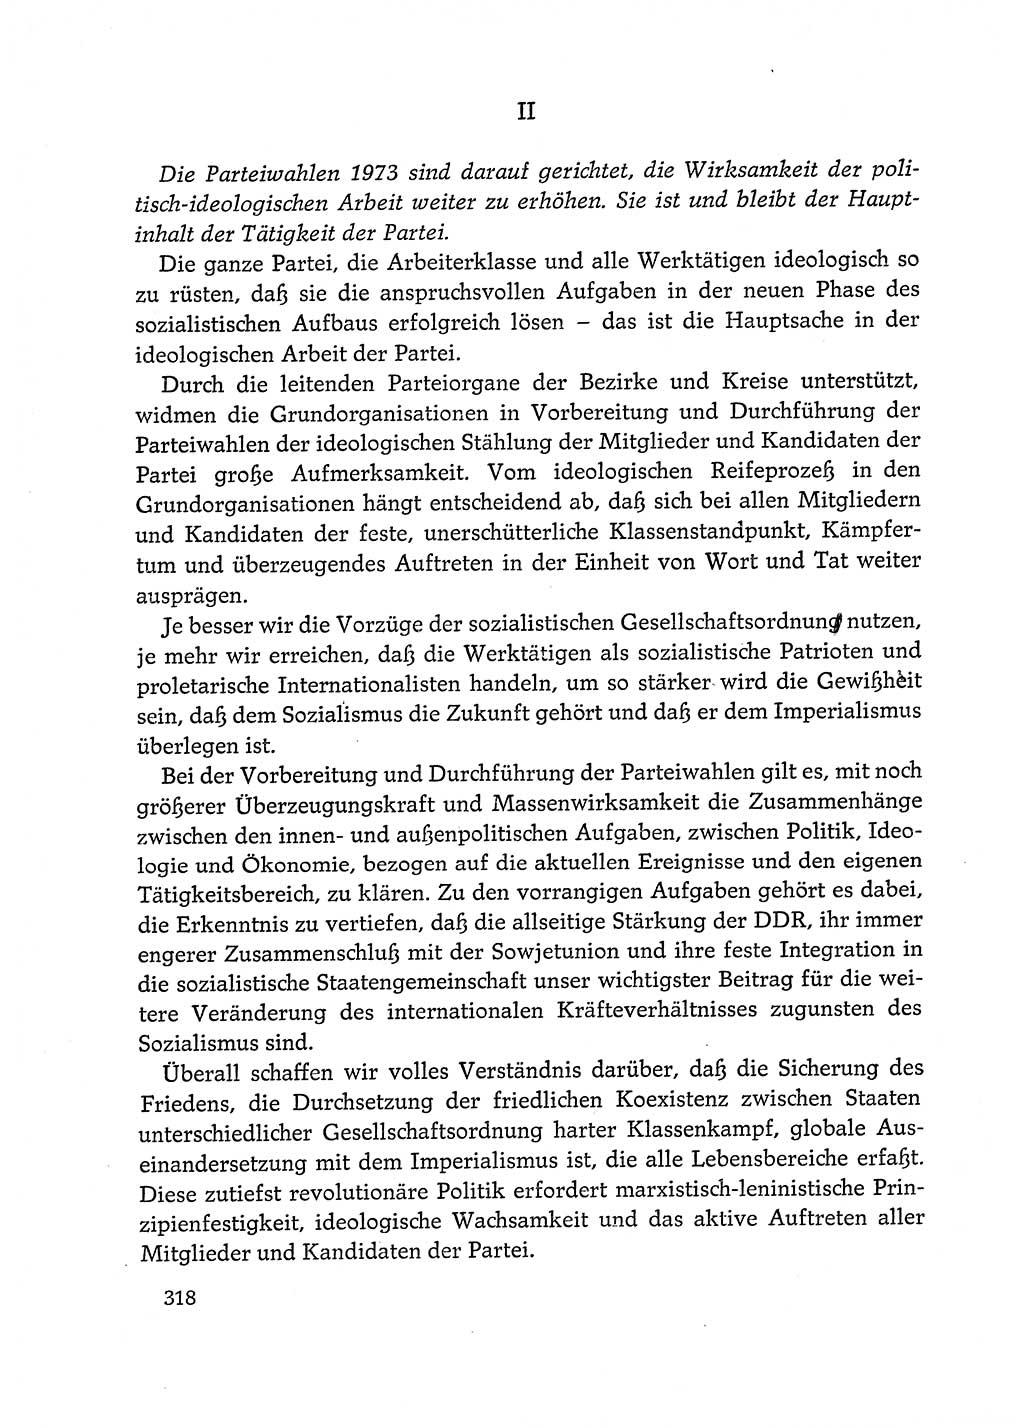 Dokumente der Sozialistischen Einheitspartei Deutschlands (SED) [Deutsche Demokratische Republik (DDR)] 1972-1973, Seite 318 (Dok. SED DDR 1972-1973, S. 318)